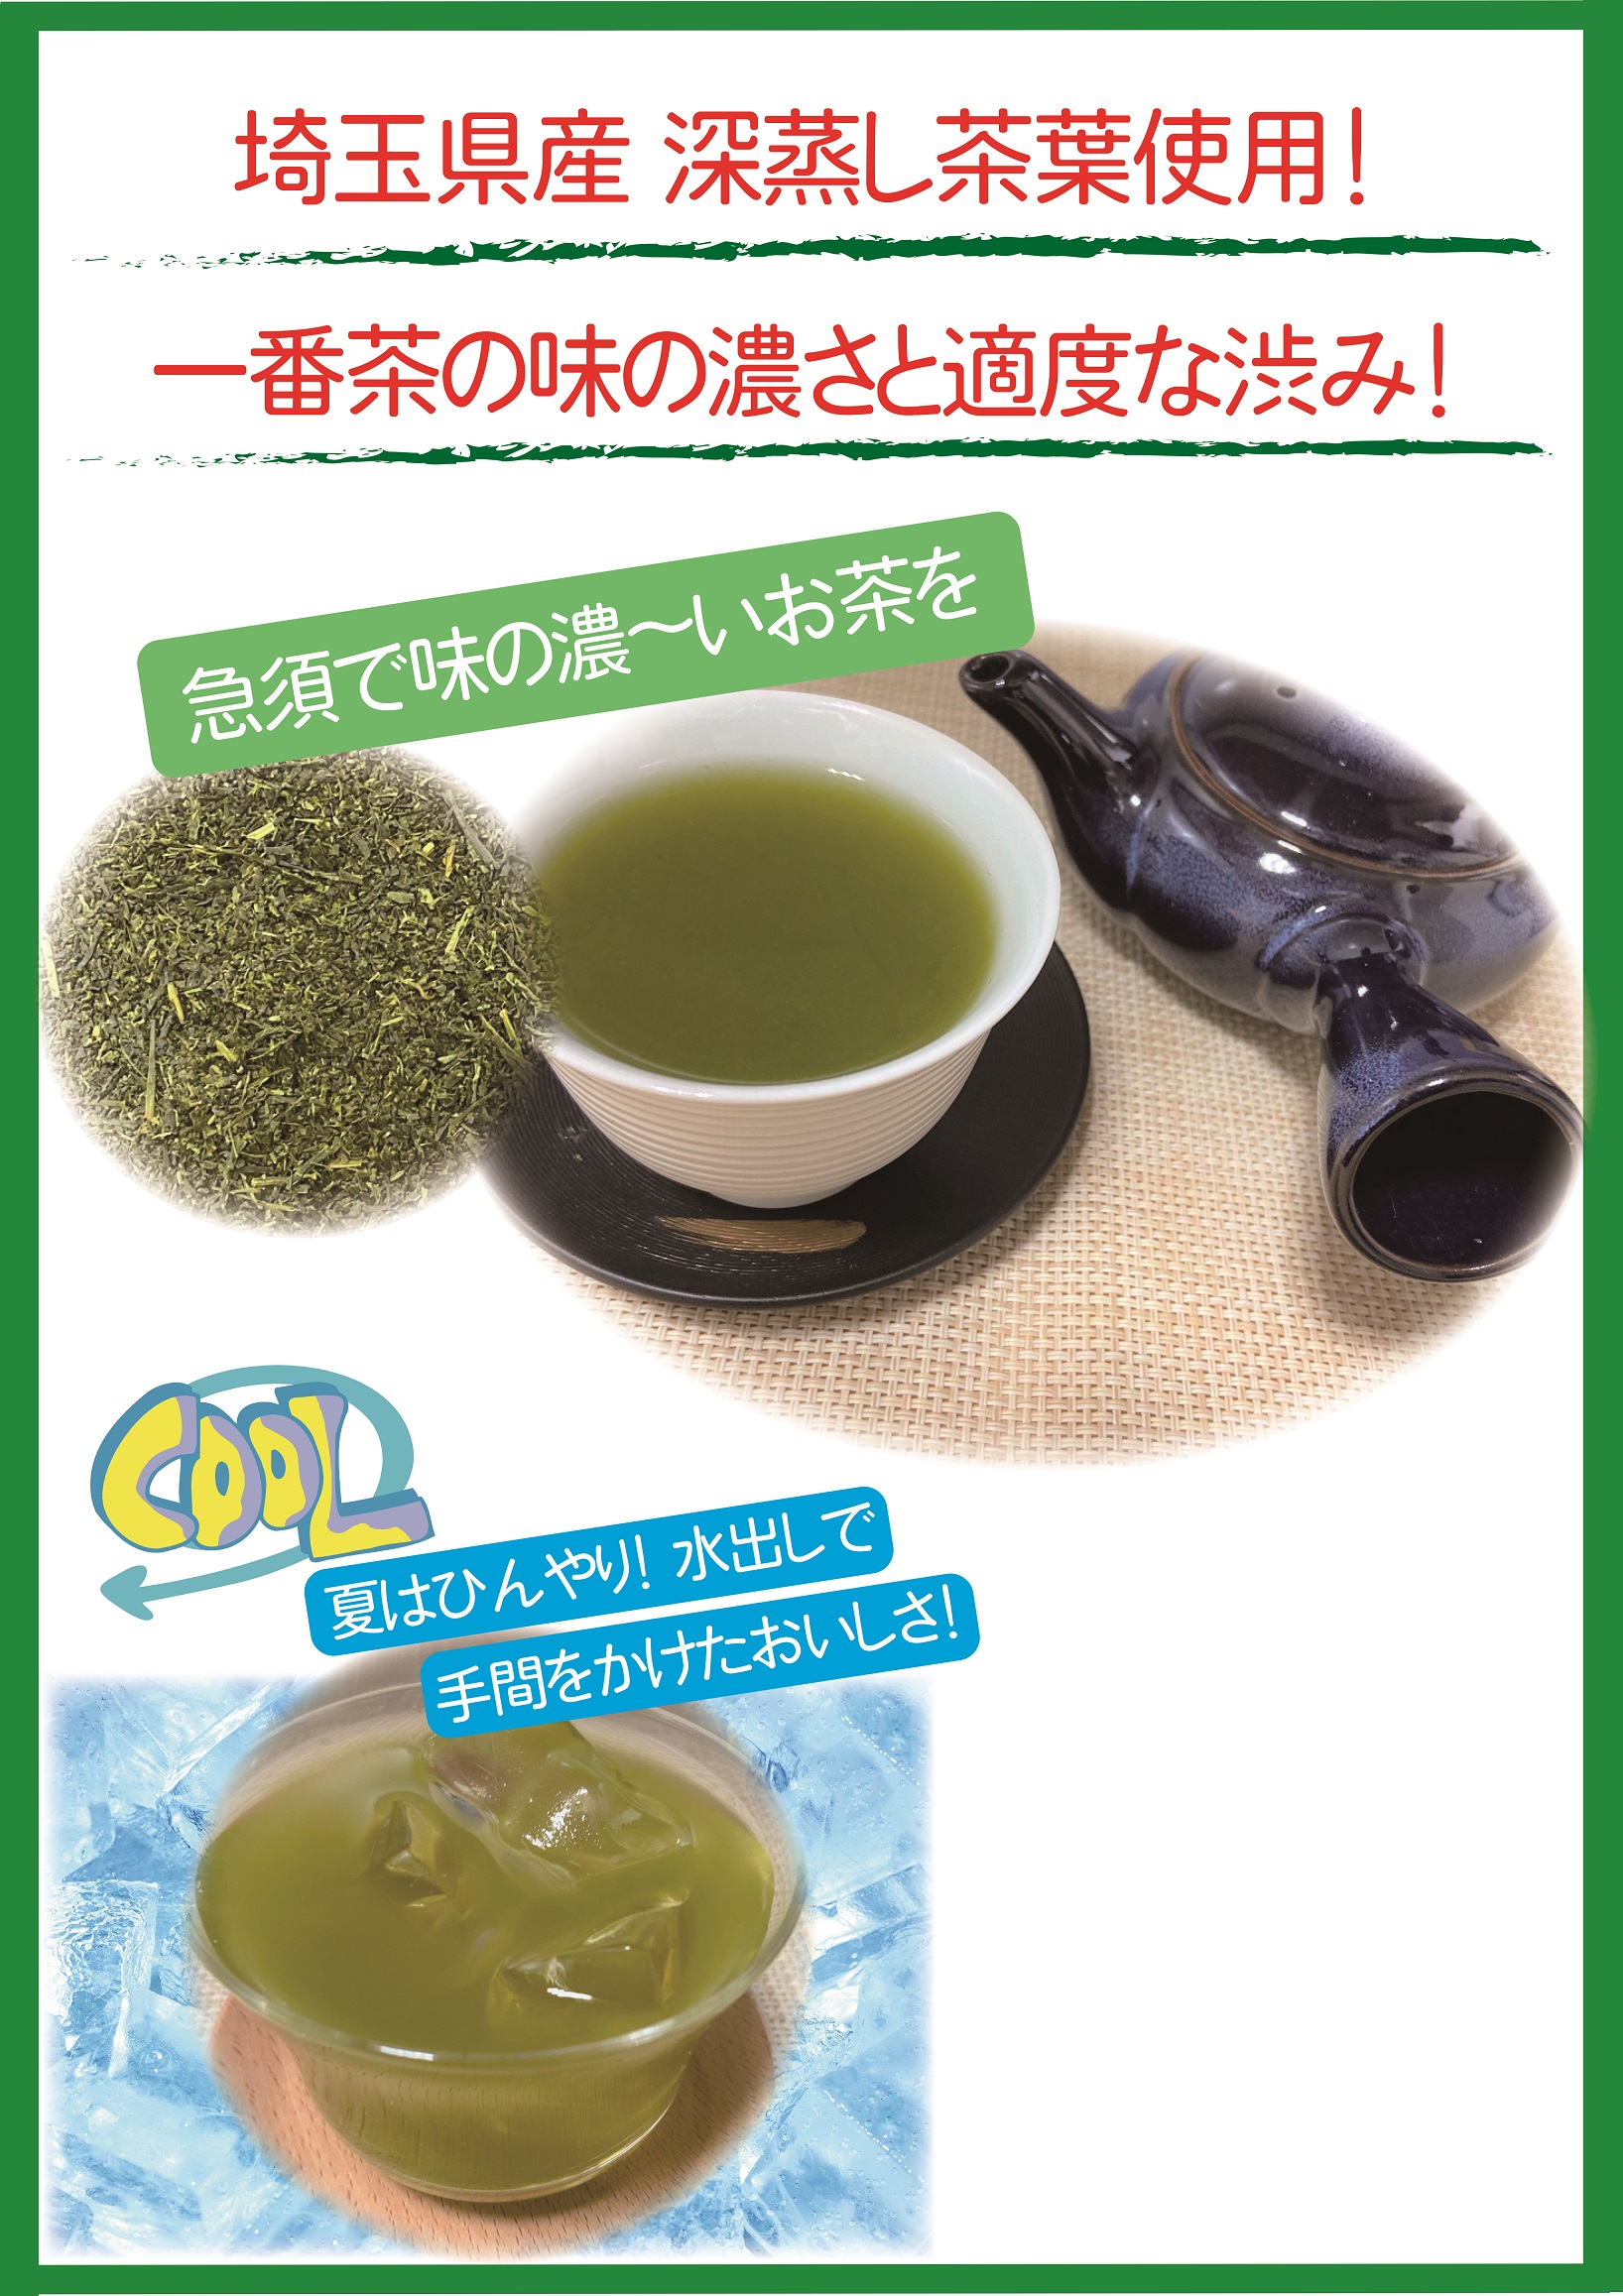 埼玉県産一番摘み狭山茶100g | お茶とコーヒーの国太楼